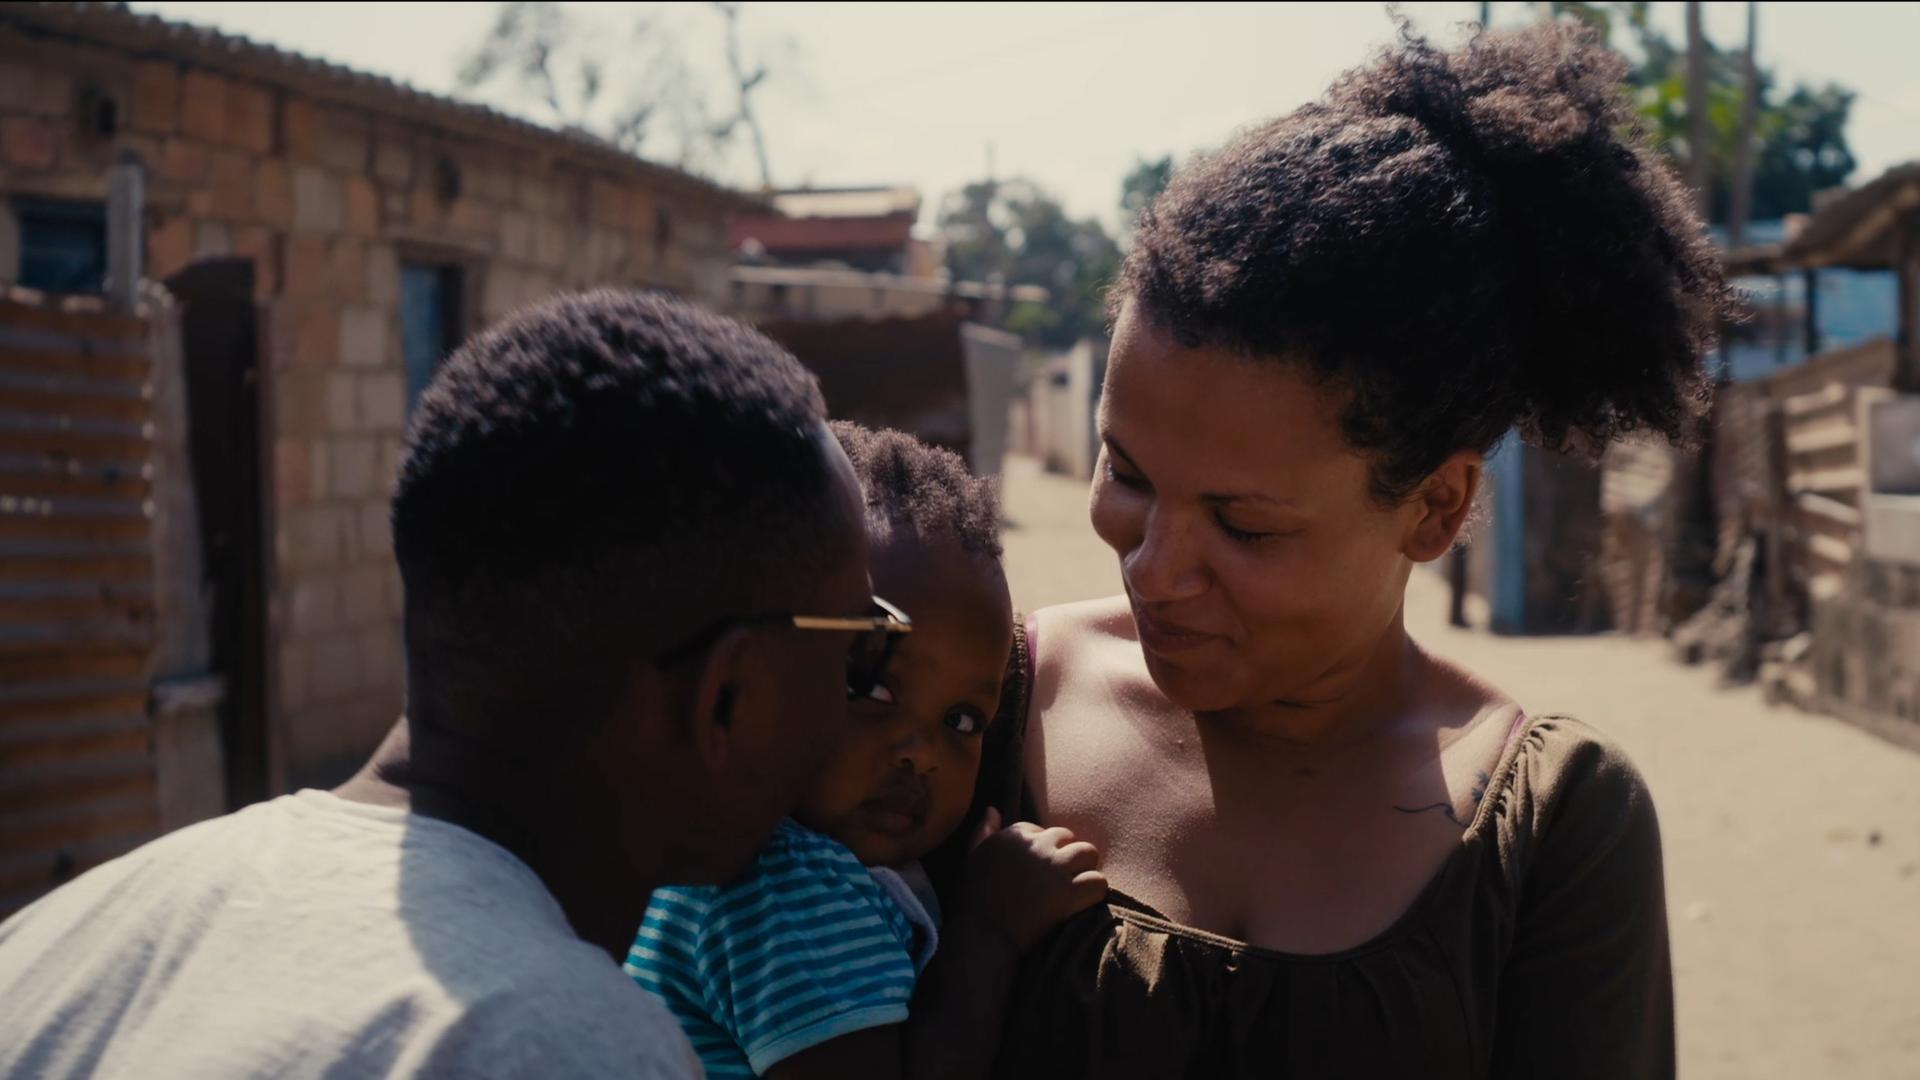 Filmszene aus dem Dokumentarfilm "The Homes We Carry". Zu sehen ist eine junge mosambikanische Frau (vermutlich die Protagonistin des Film) mit Kind auf dem Arm sowie die Rückansicht eines Mannes.